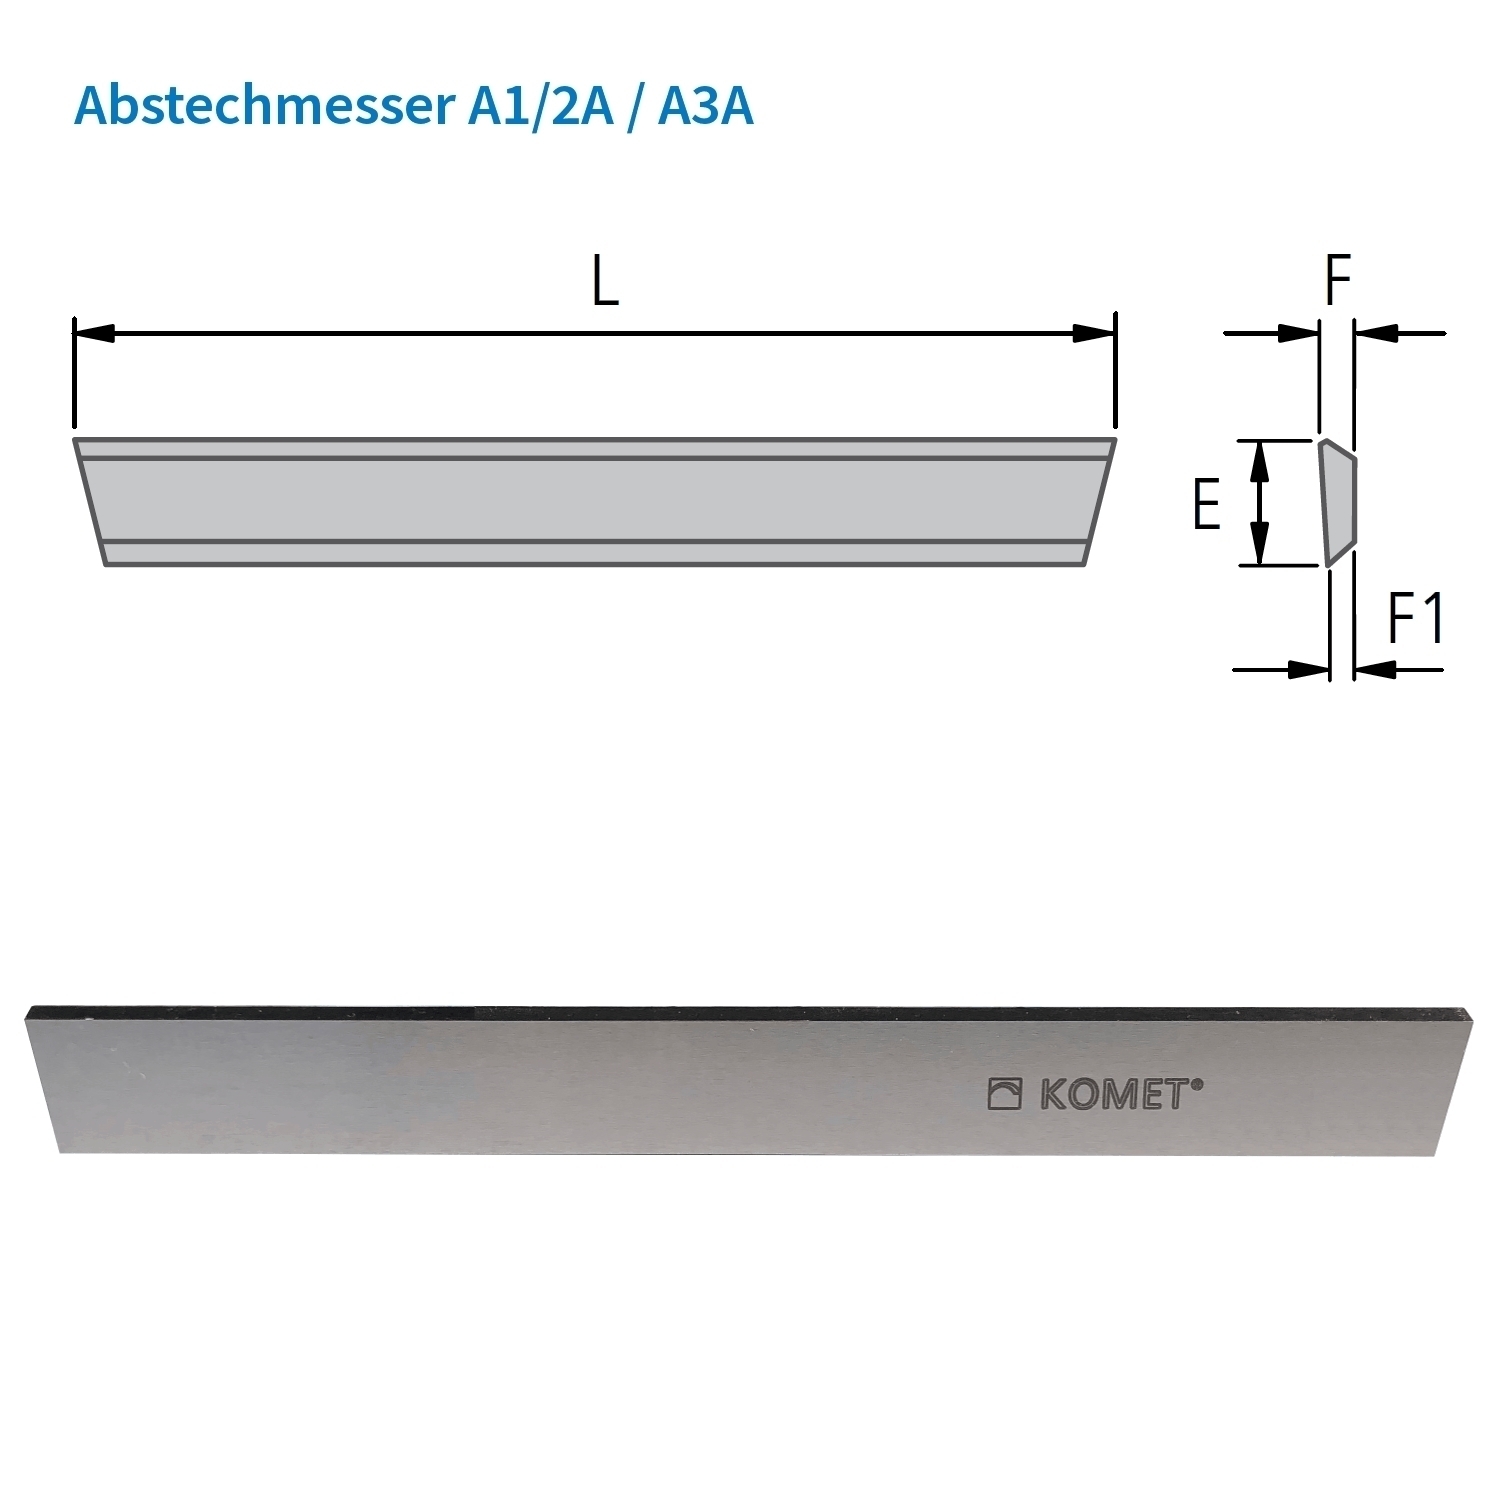 KOMET Abstechmesser A2A für Abstechhalter B